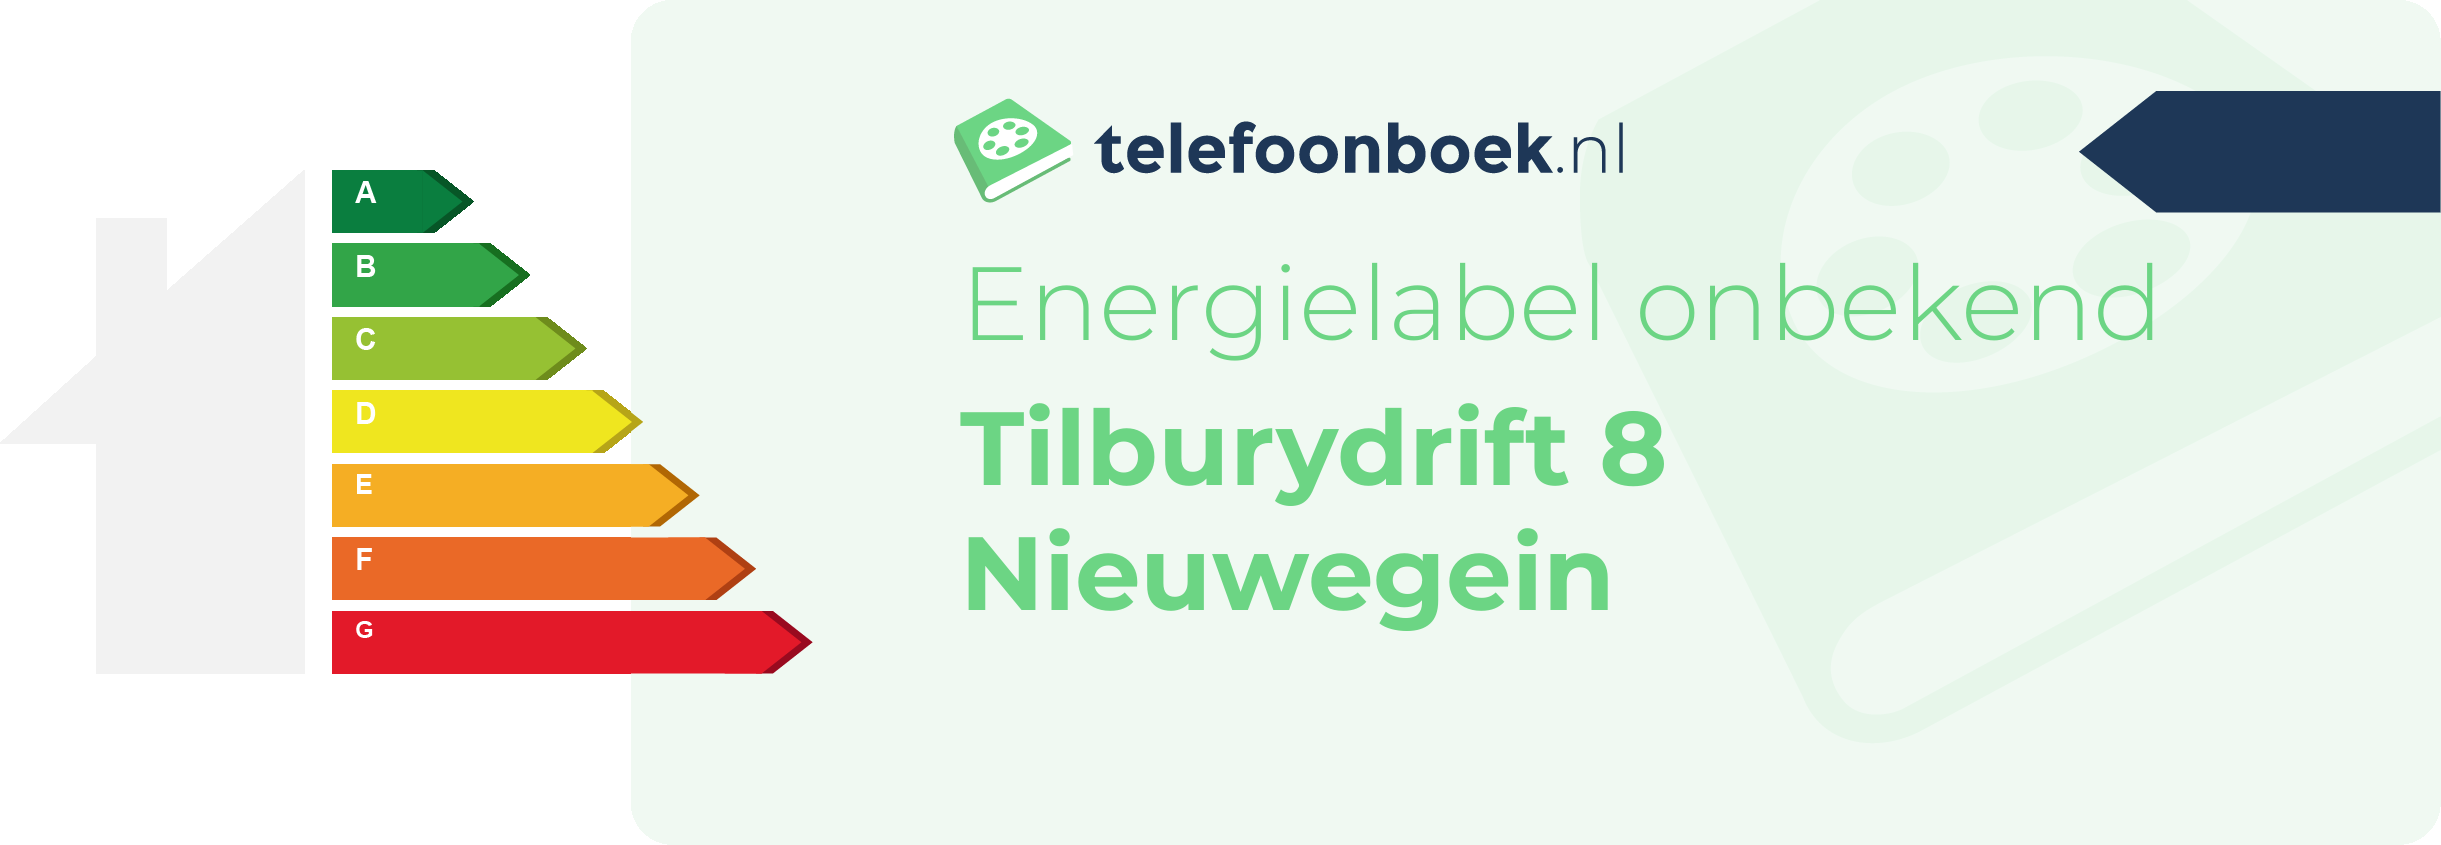 Energielabel Tilburydrift 8 Nieuwegein